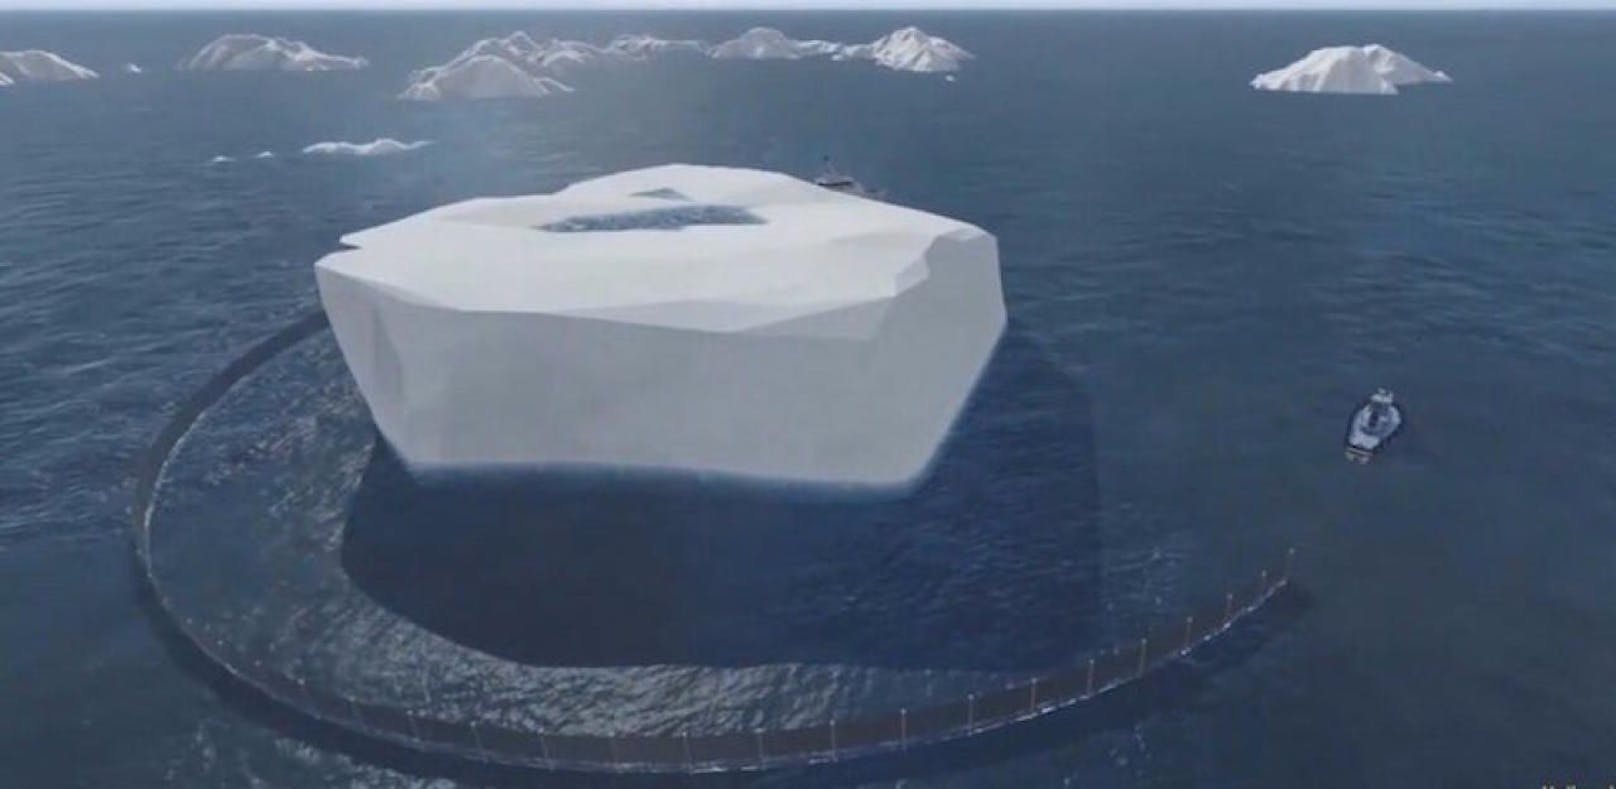 So stellen sich die Planer den Transport des Eisbergs vor